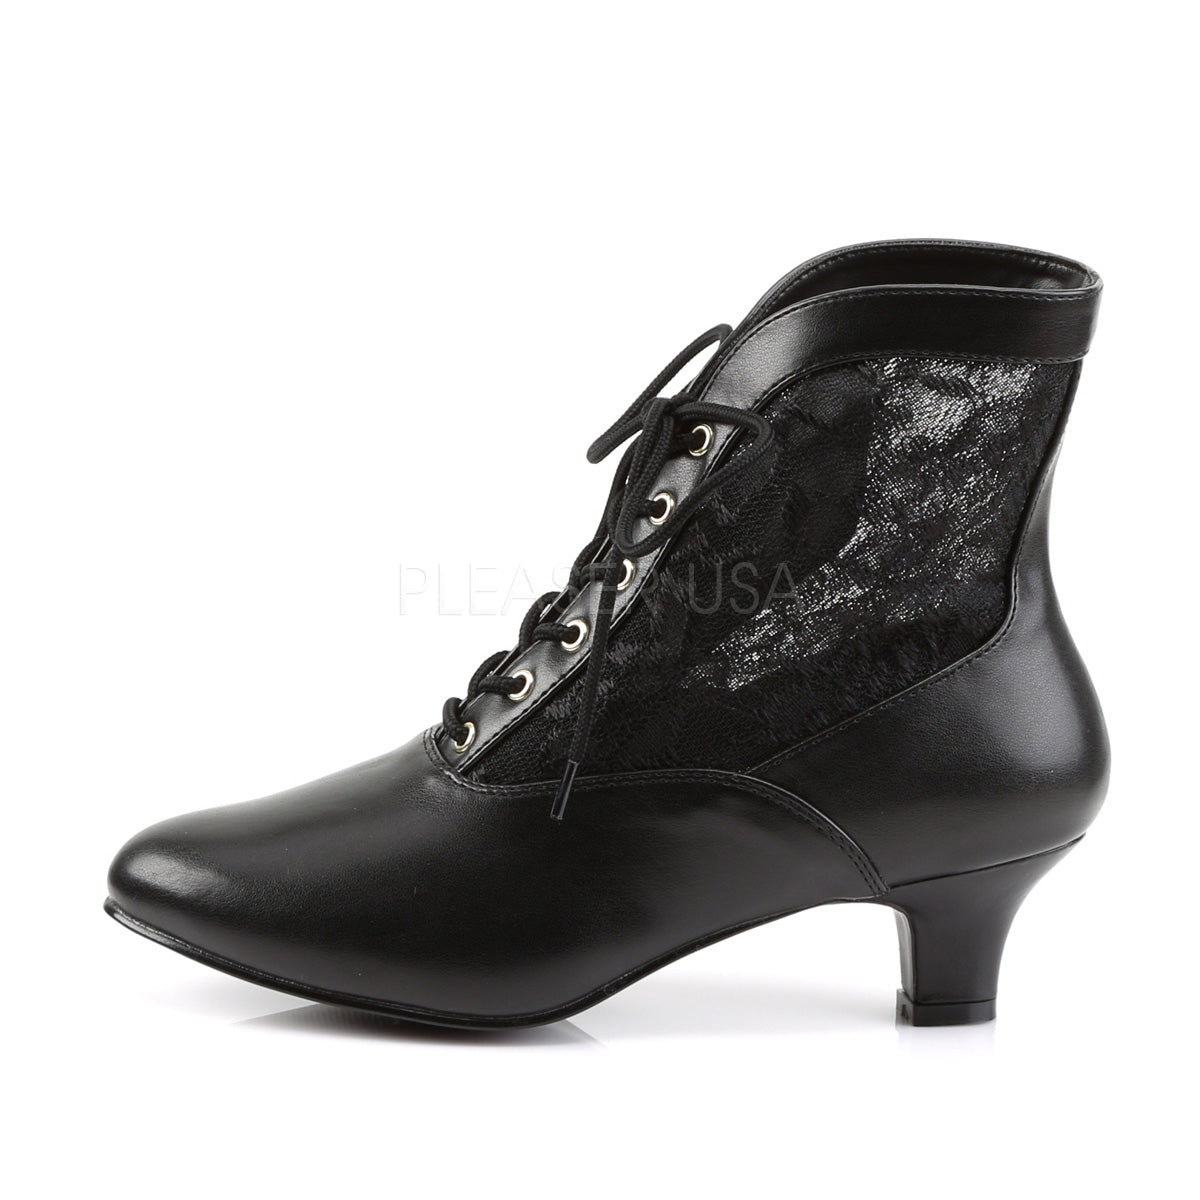 Buy Men's 2 Inch Heel Height Increasing Black Formal Ring Buckle Zipper  Boots-5 UK at Amazon.in